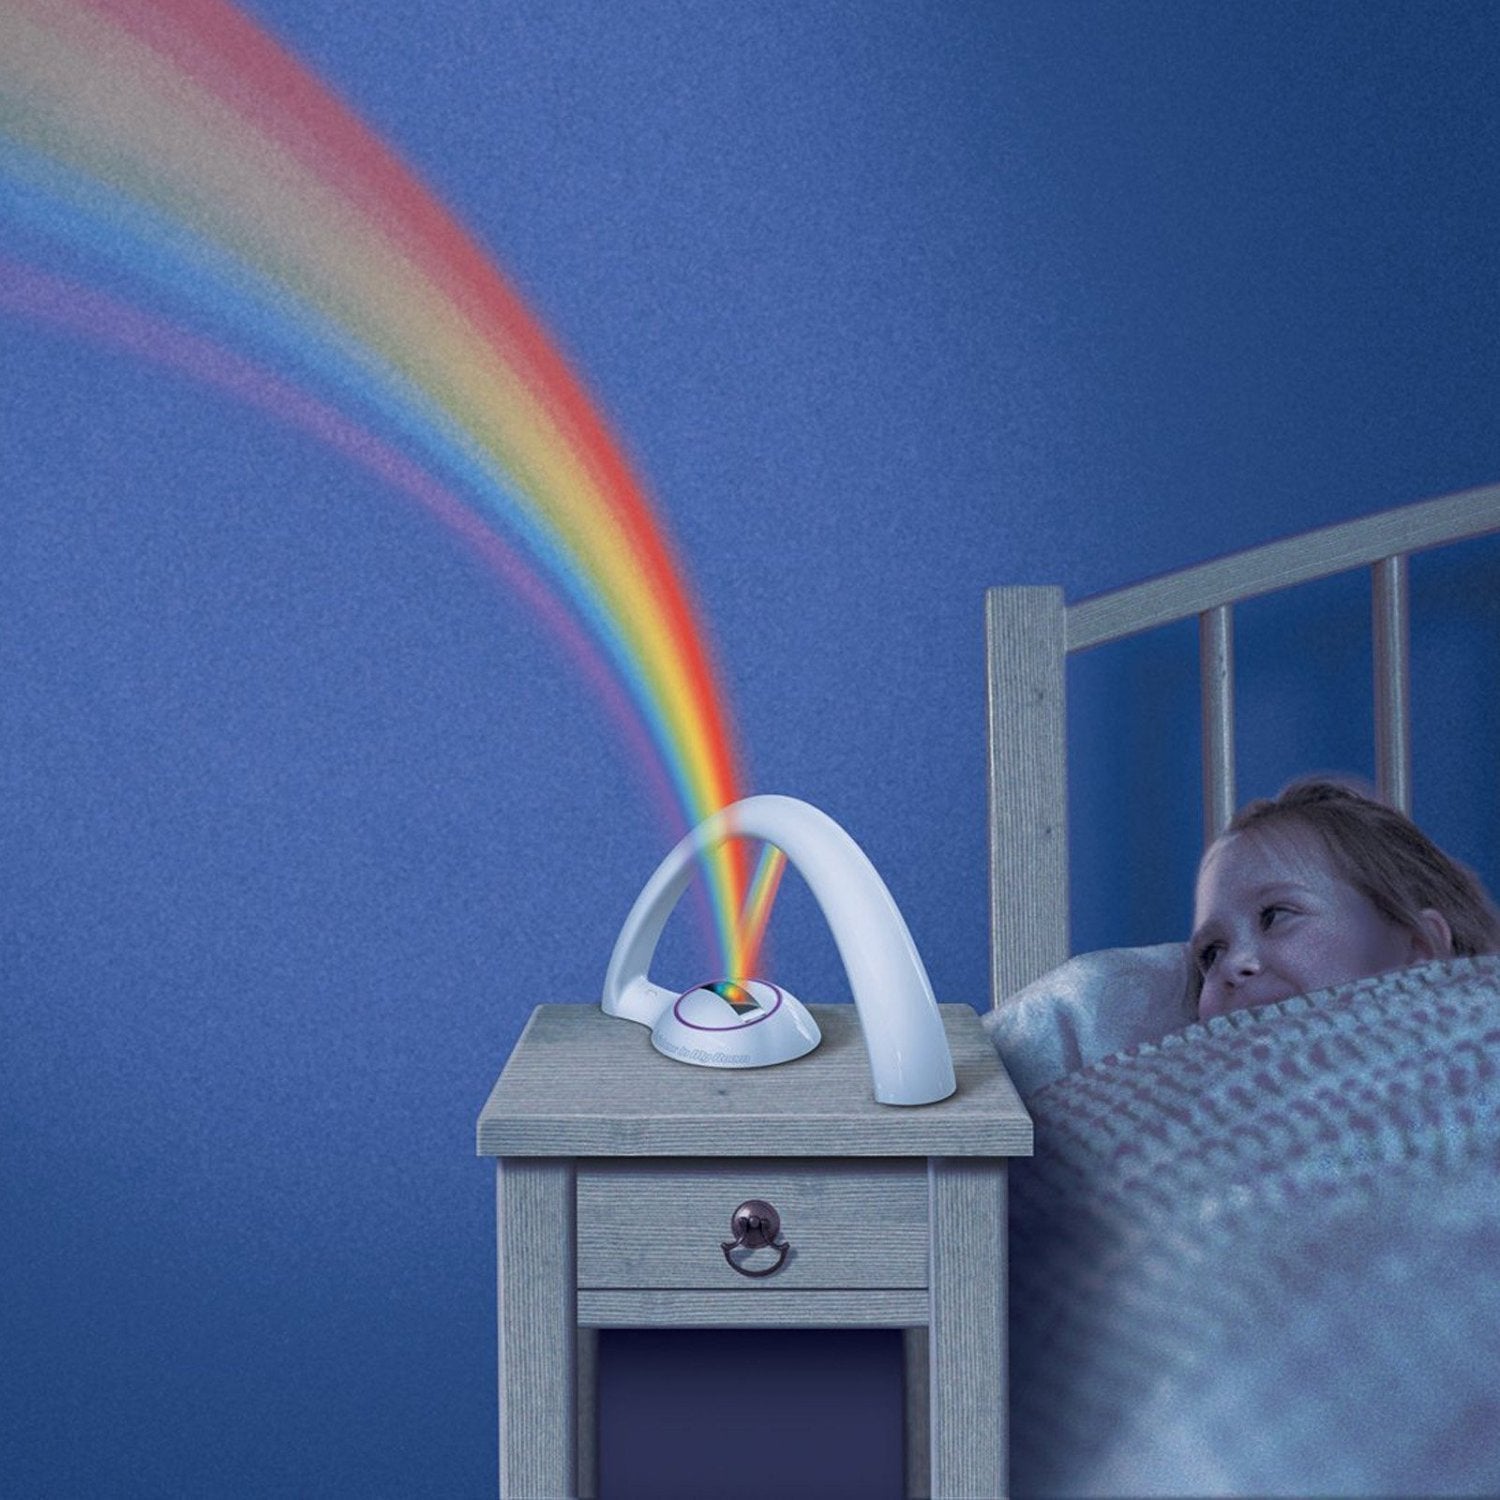 RainbowLight - Lys upp ditt rum med en regnbåge